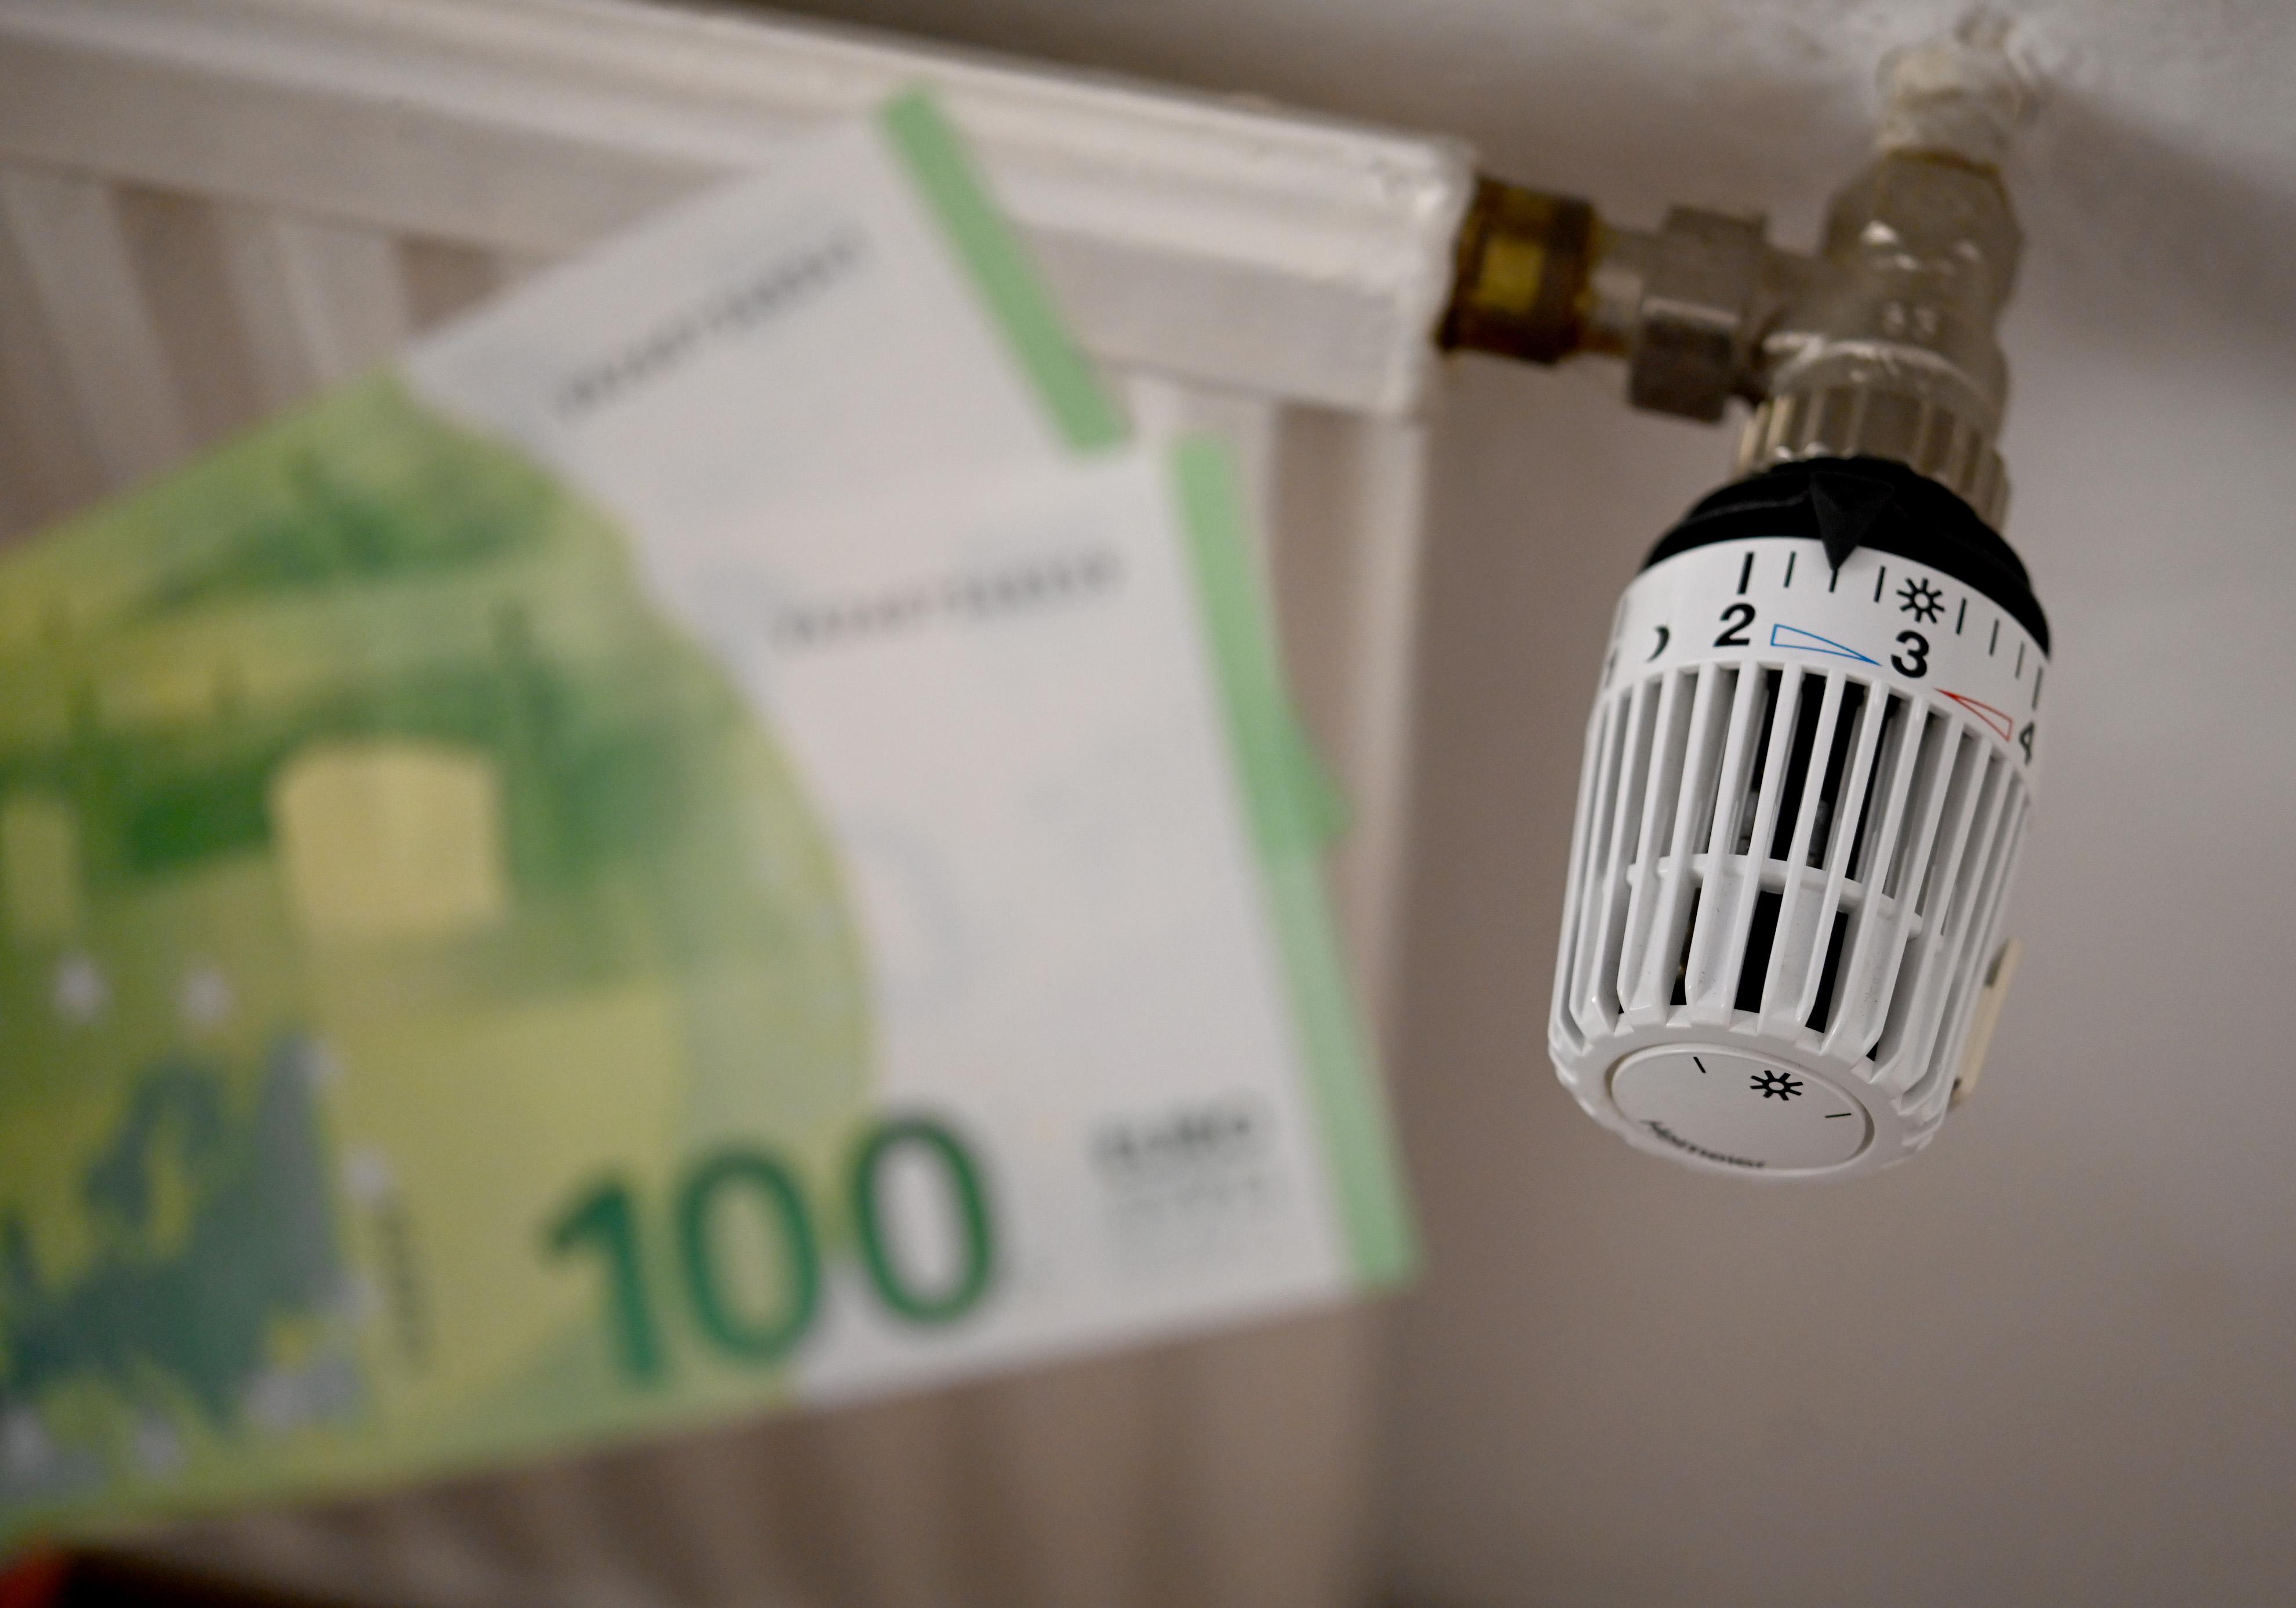 Energiewende: 38 Euro pro Monat - mit Wärmepumpen, PV und Dämmung